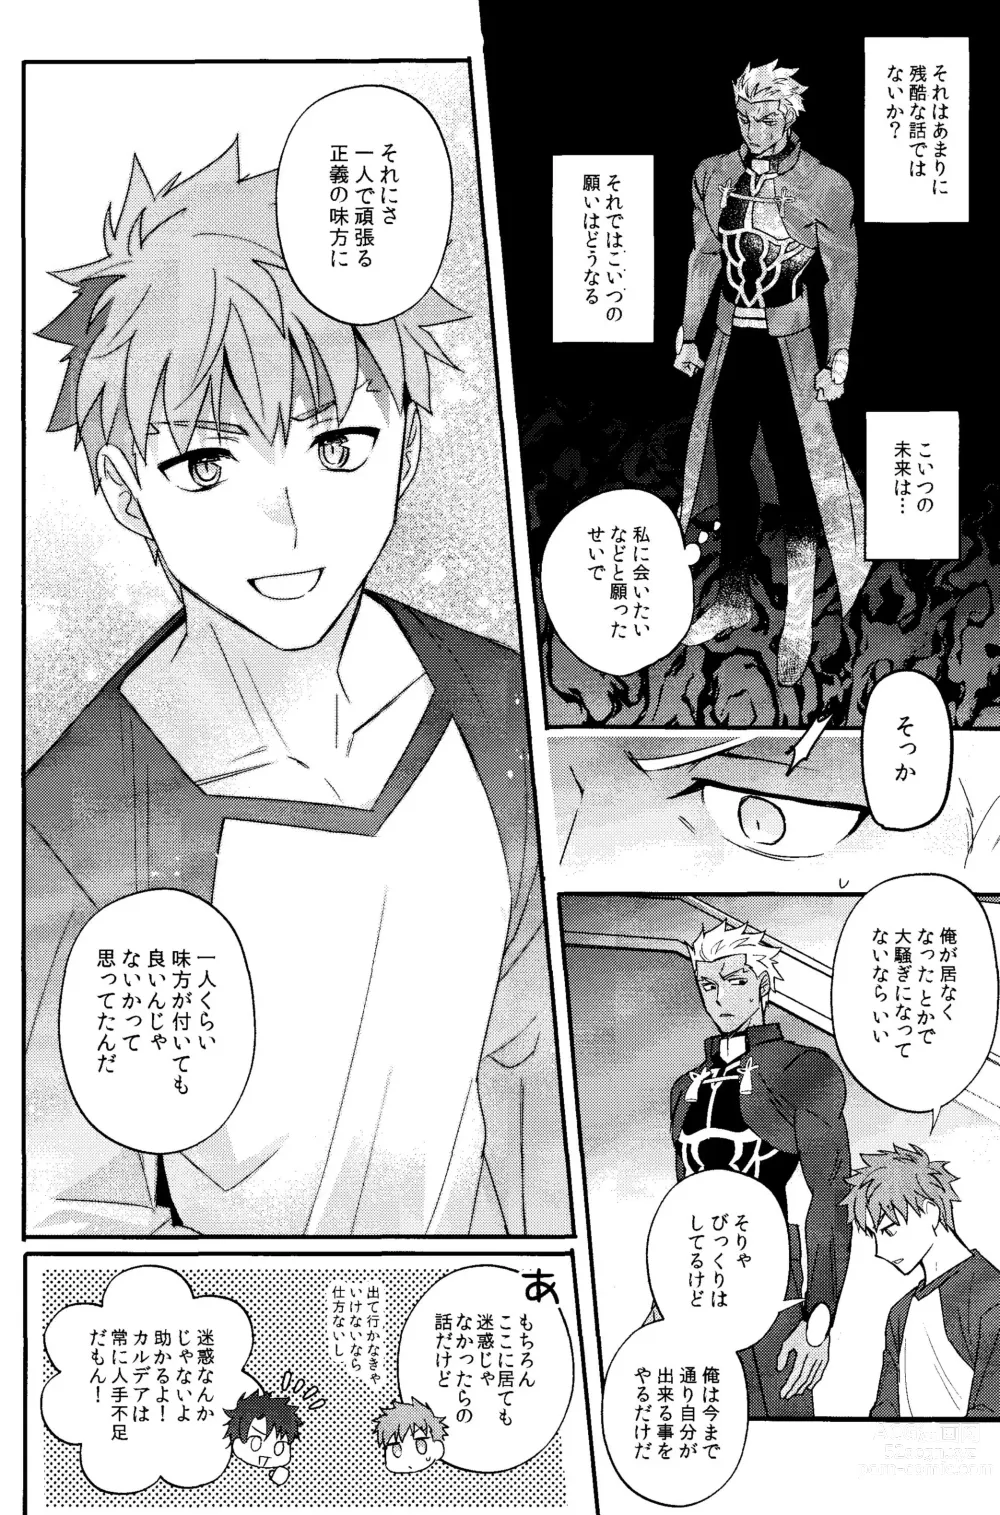 Page 25 of doujinshi Iru